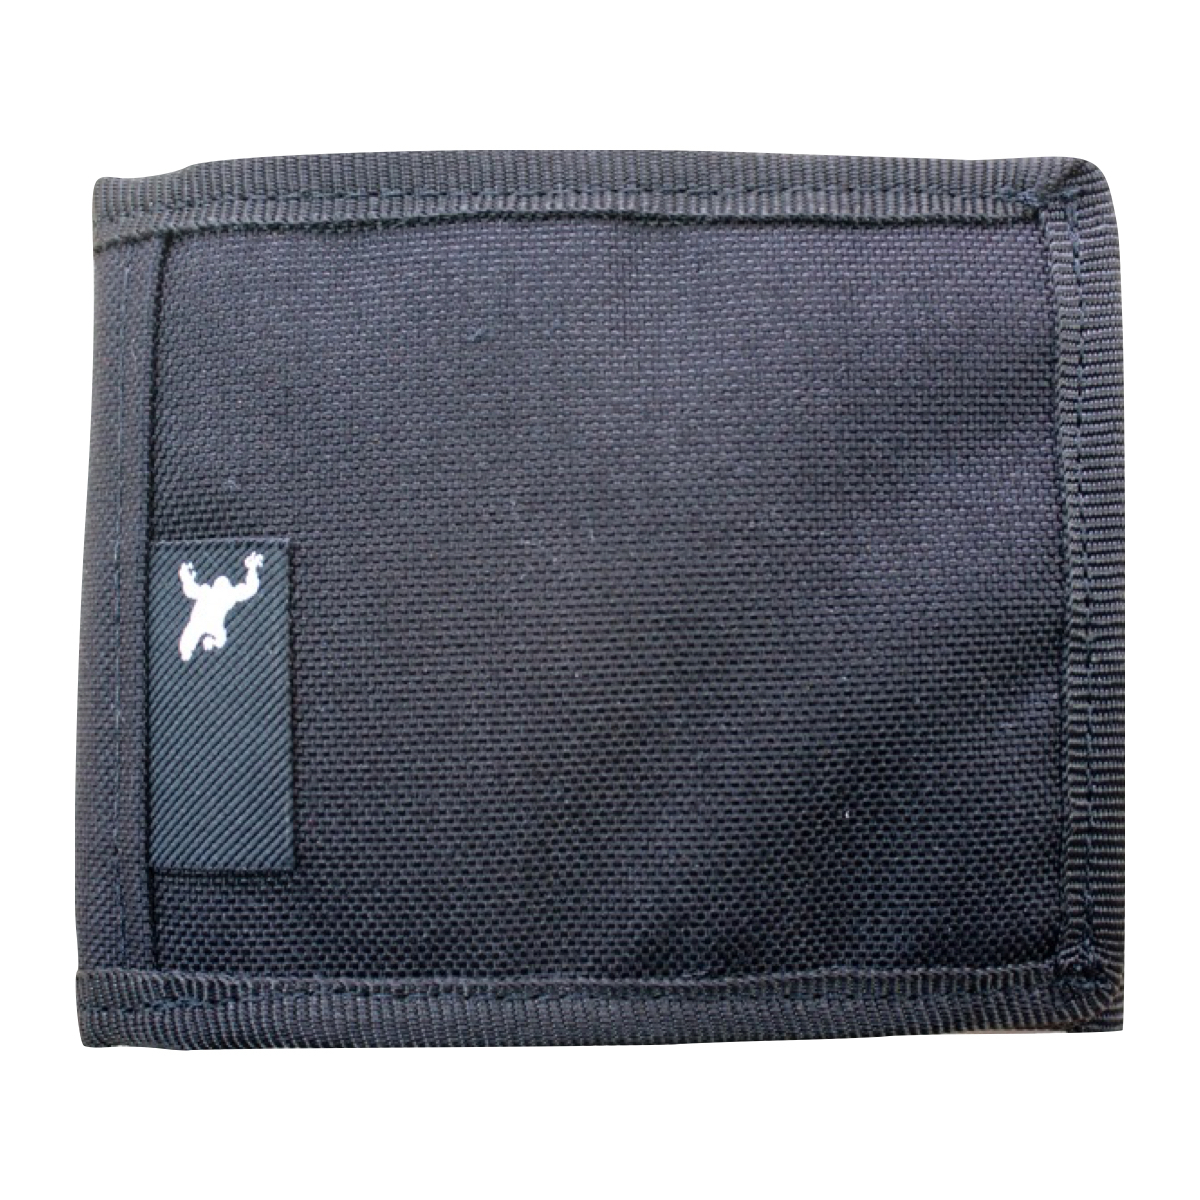 PocketBook Bifold - Black